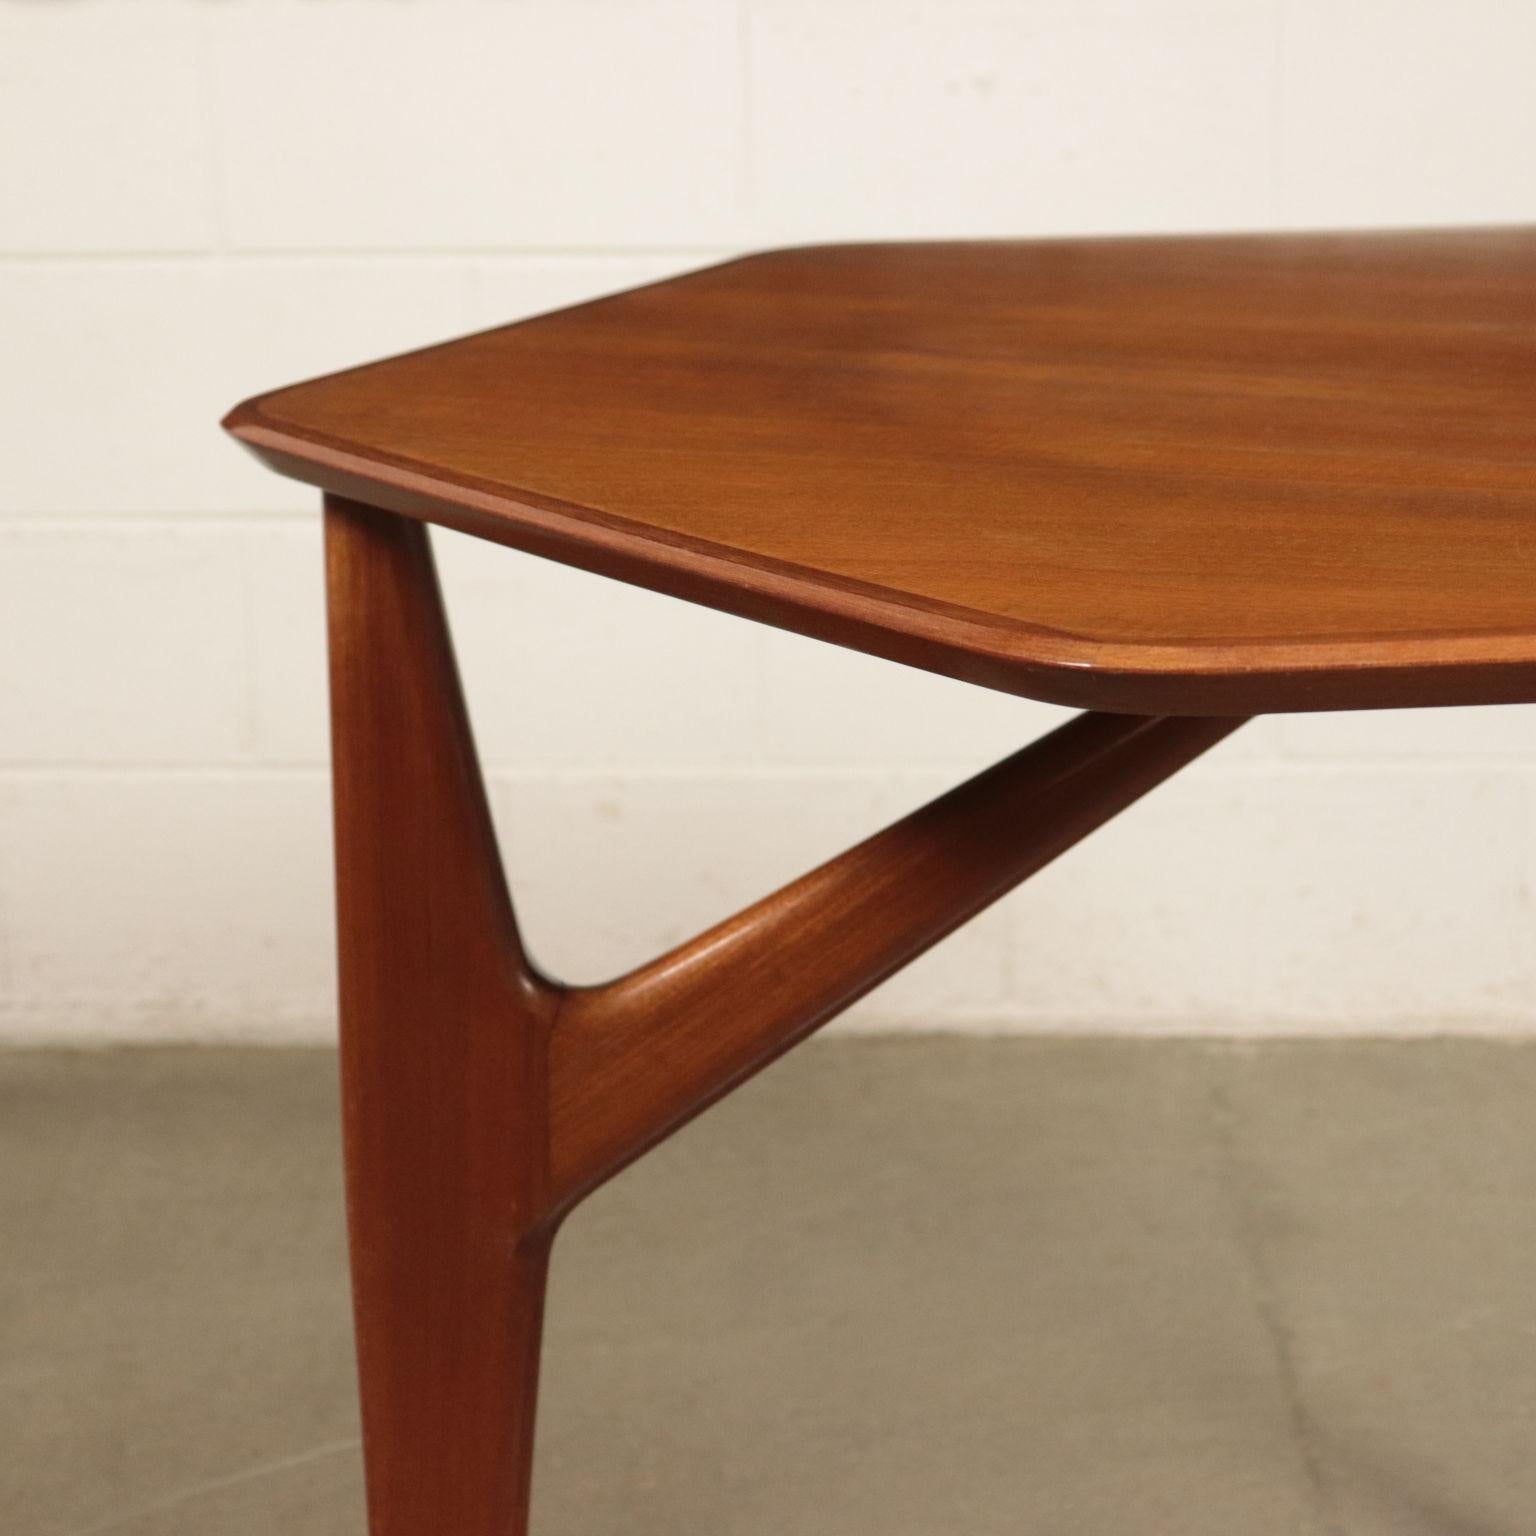 20th Century Table Mahogany Veneer and Solid Wood 1950s Italian Prodution